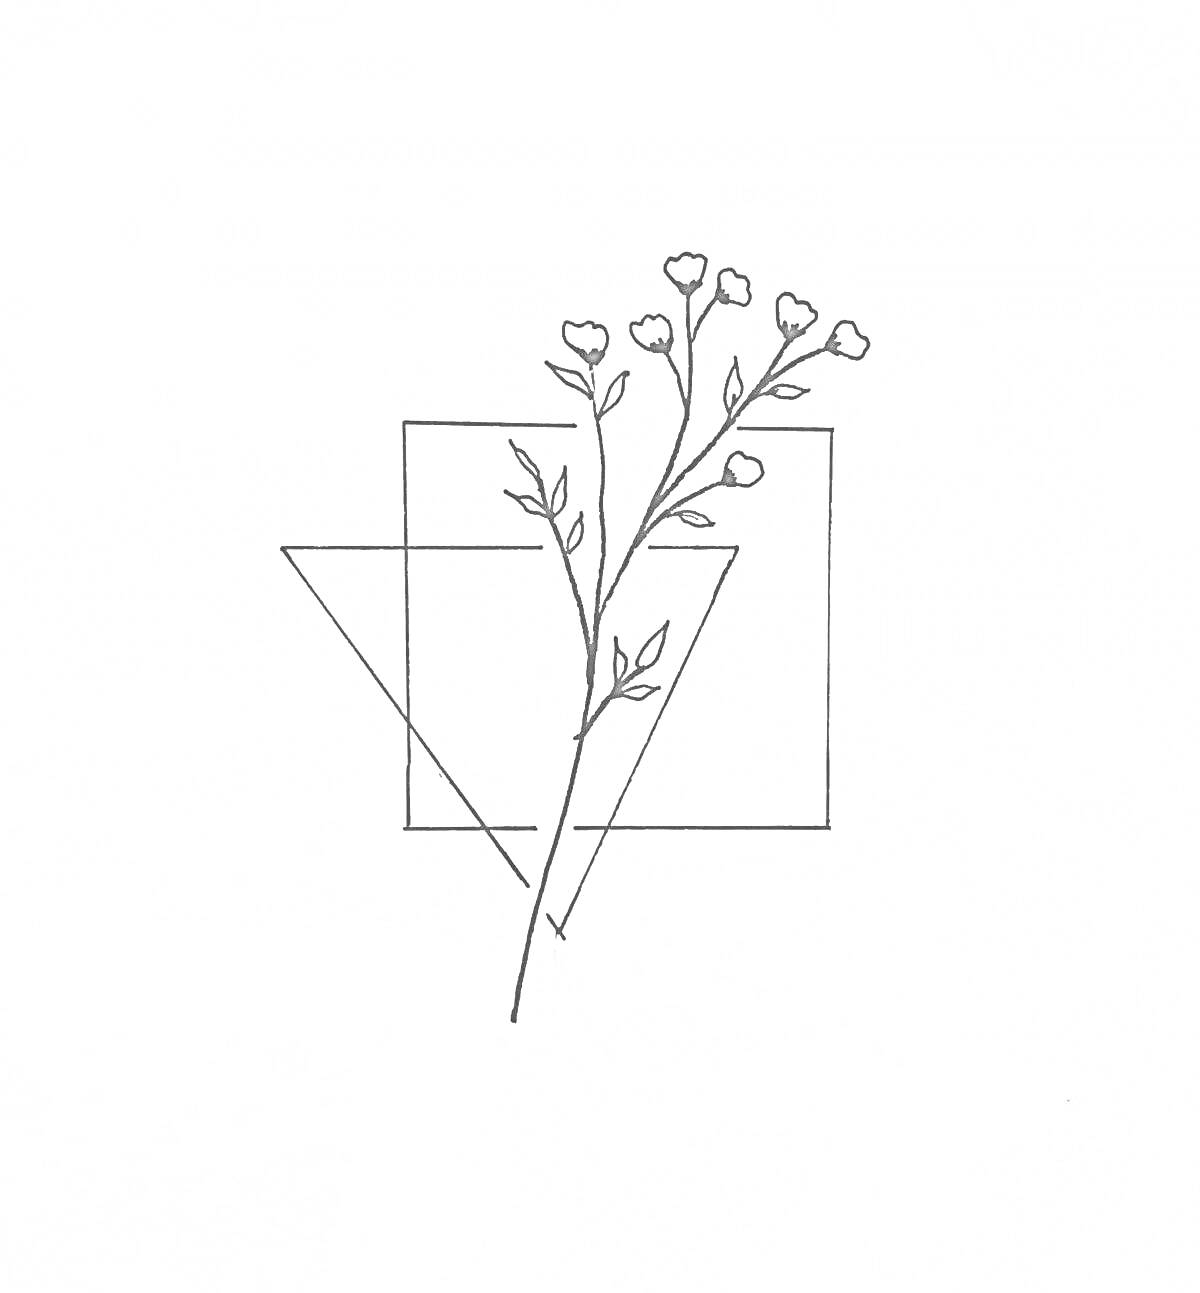 цветок с маленькими бутонами на фоне пересекающихся треугольников и прямоугольников